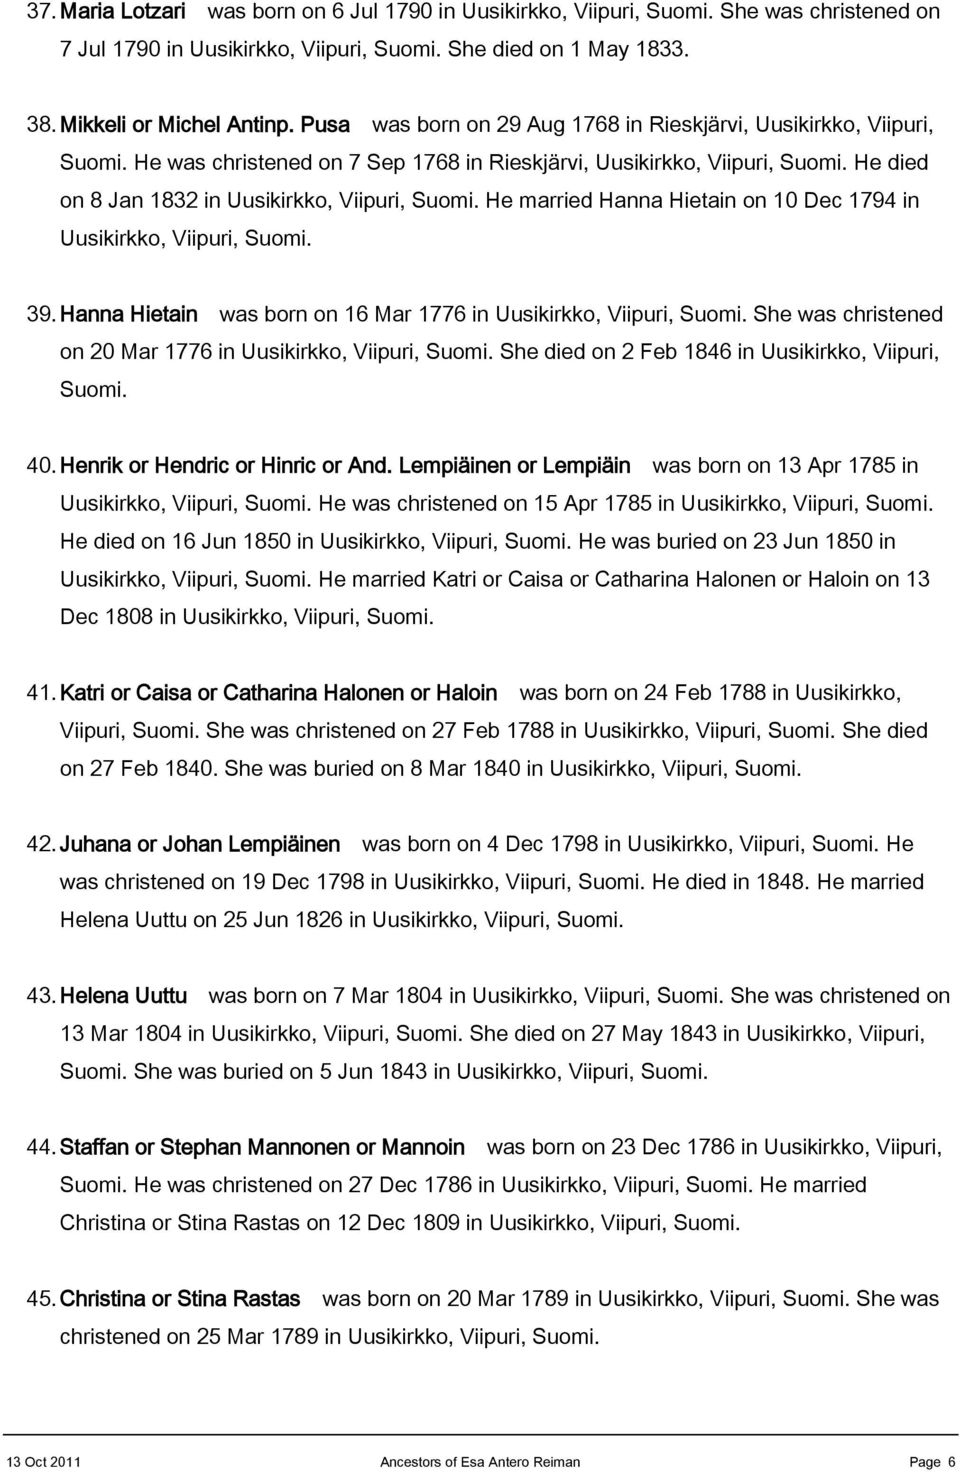 He married Hanna Hietain on 10 Dec 1794 in Uusikirkko, Viipuri, Suomi. 39. Hanna Hietain was born on 16 Mar 1776 in Uusikirkko, Viipuri, Suomi.